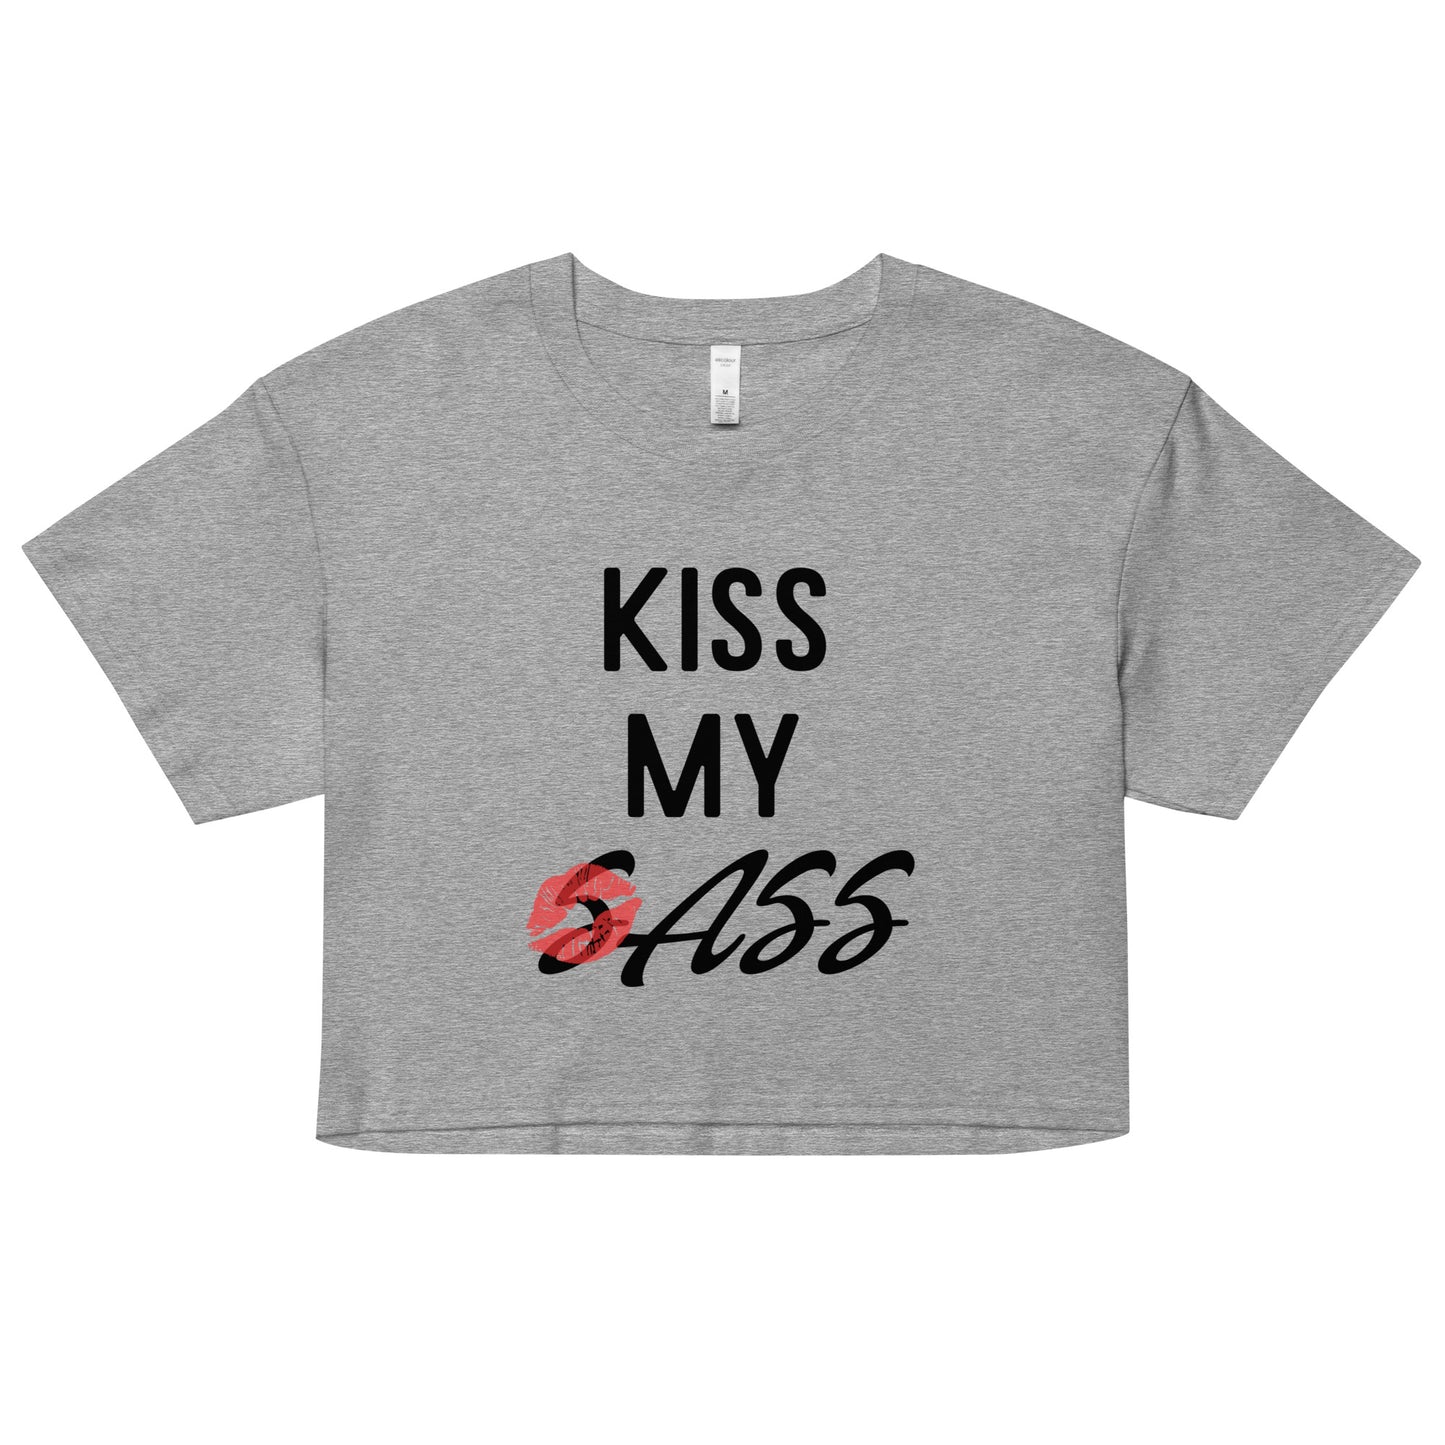 Kiss my sass crop top